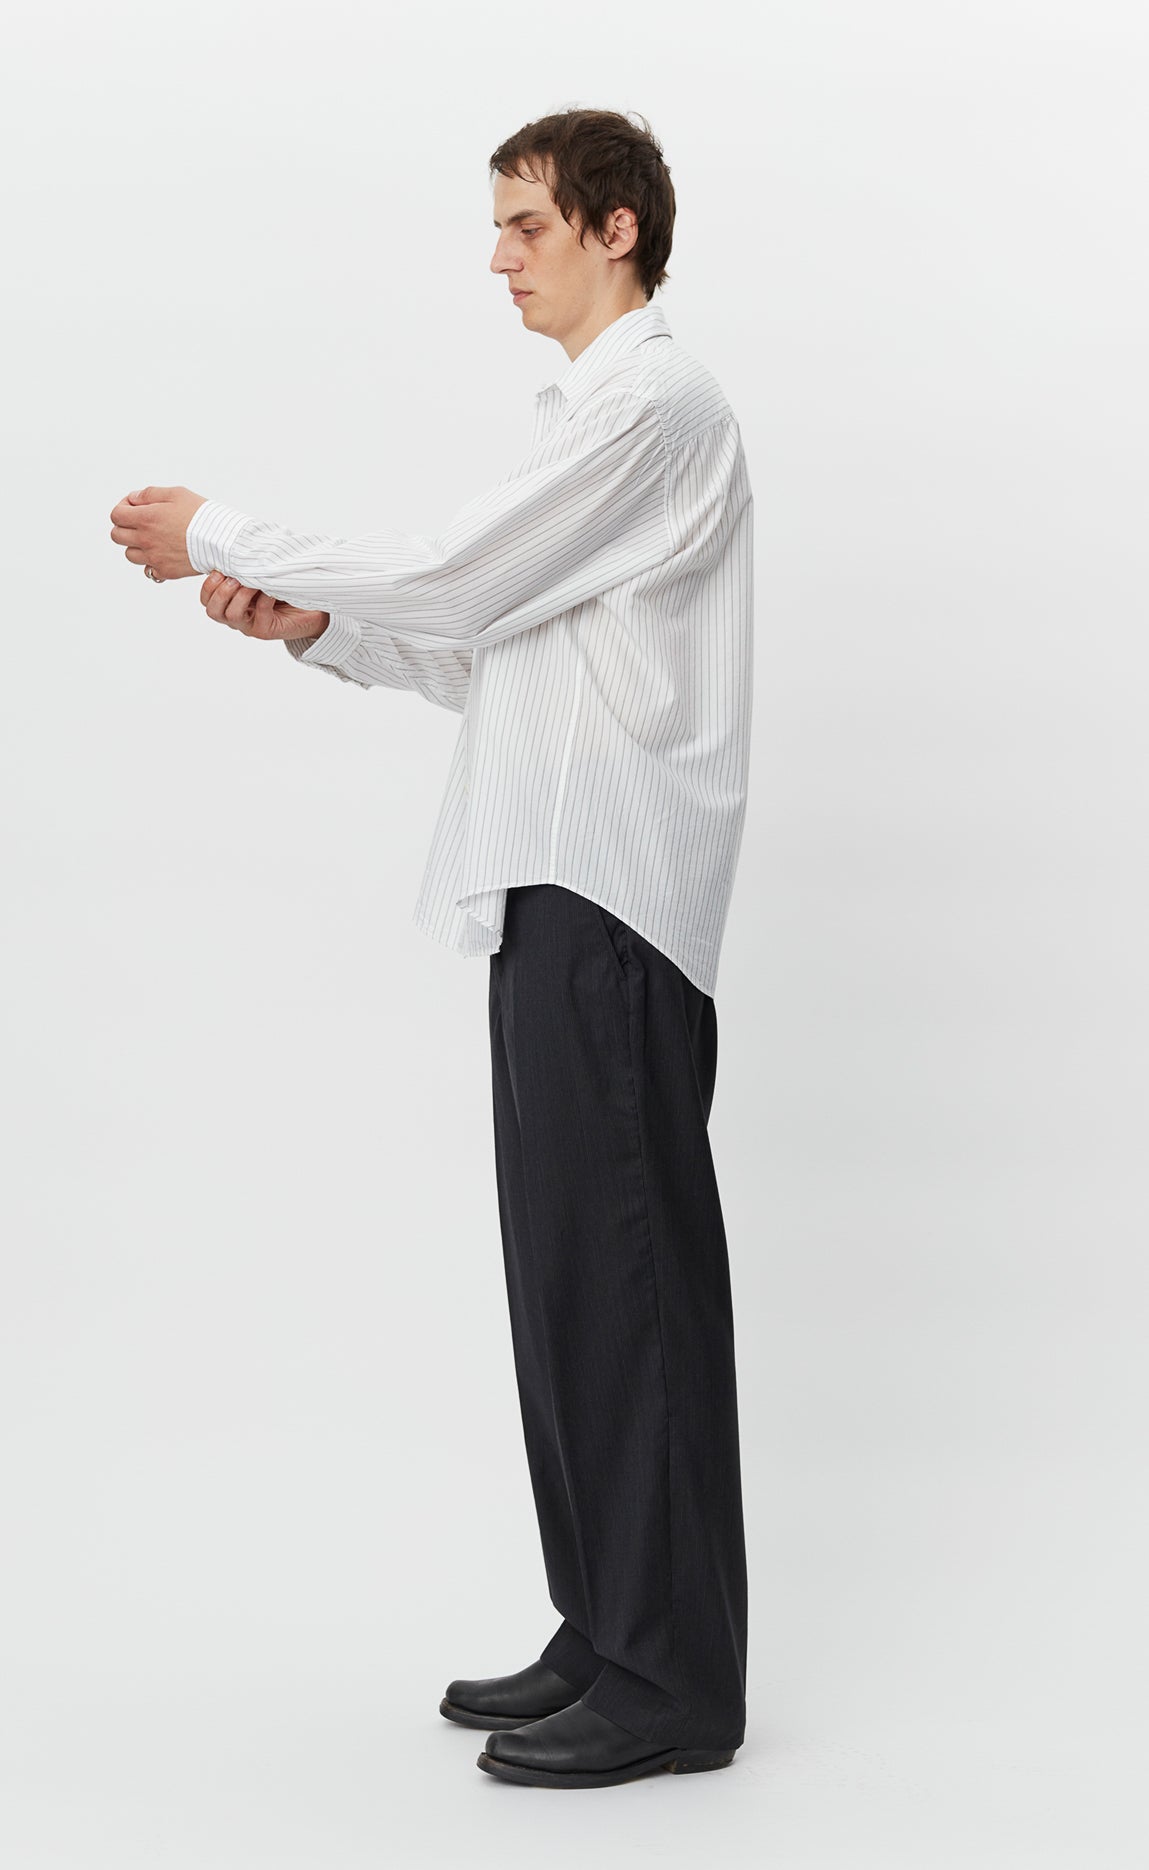 Executive Shirt - White Stripe